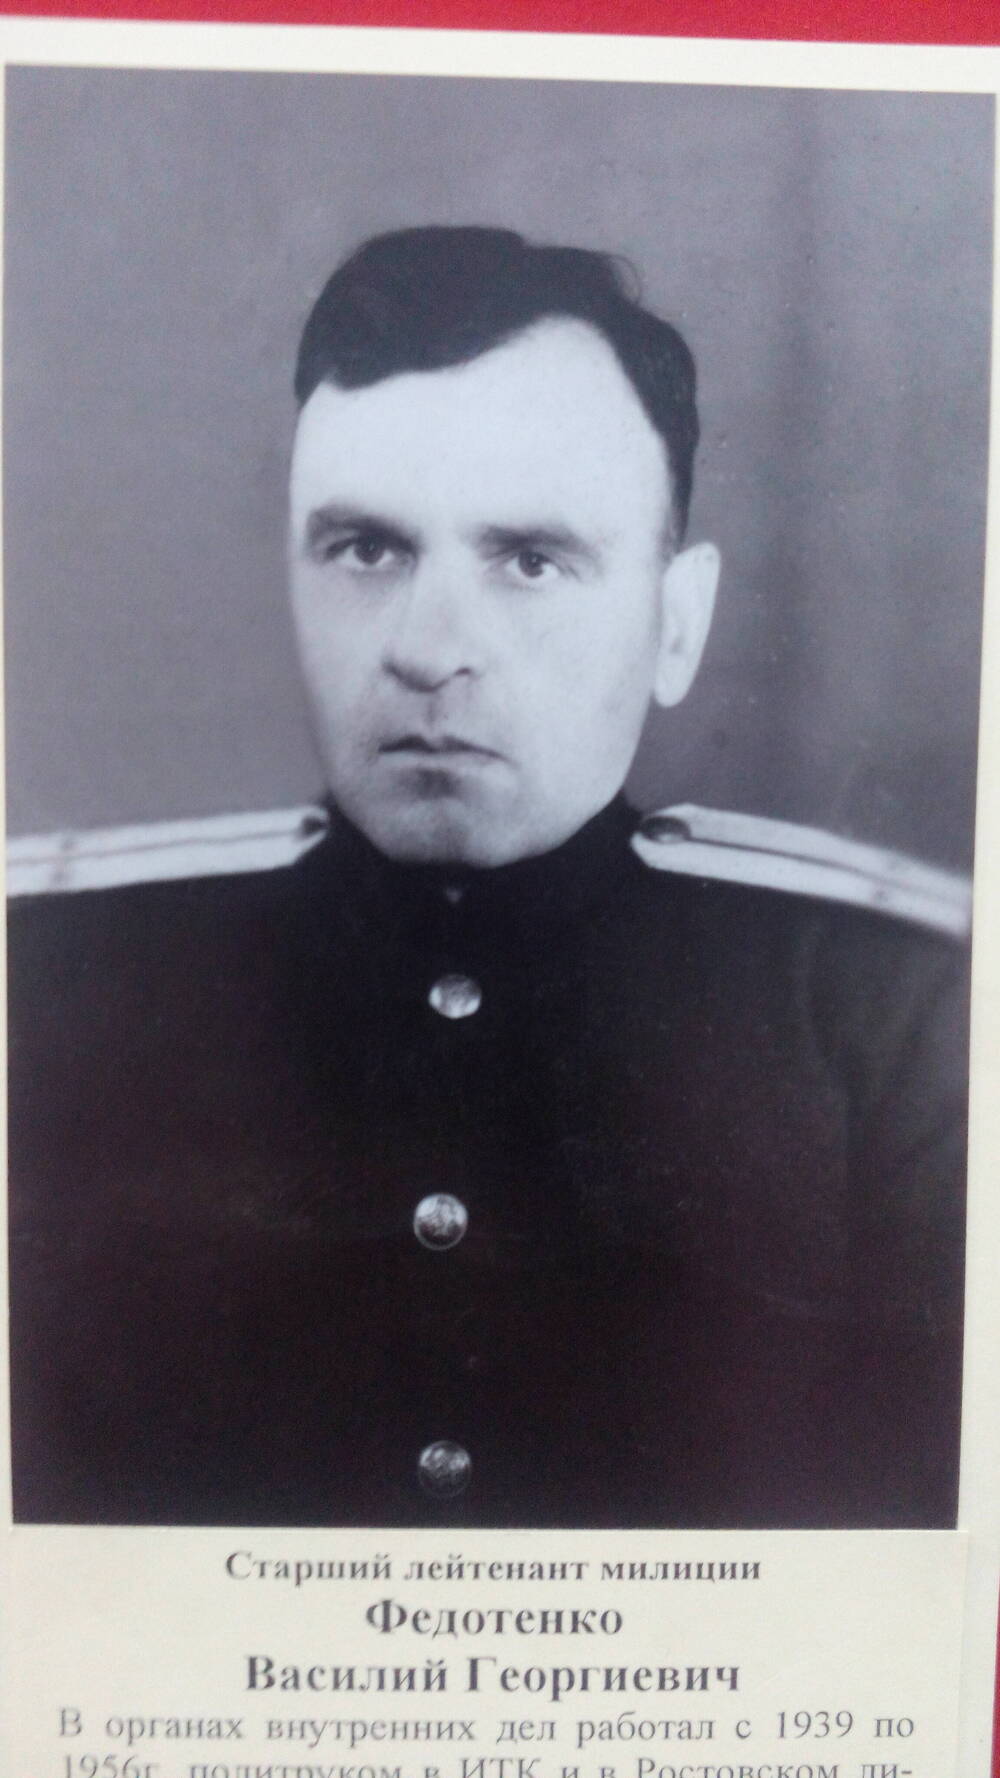 Фото черно-белое, погрудный портрет Старший лейтенант  милиции В,Г. Федотенко